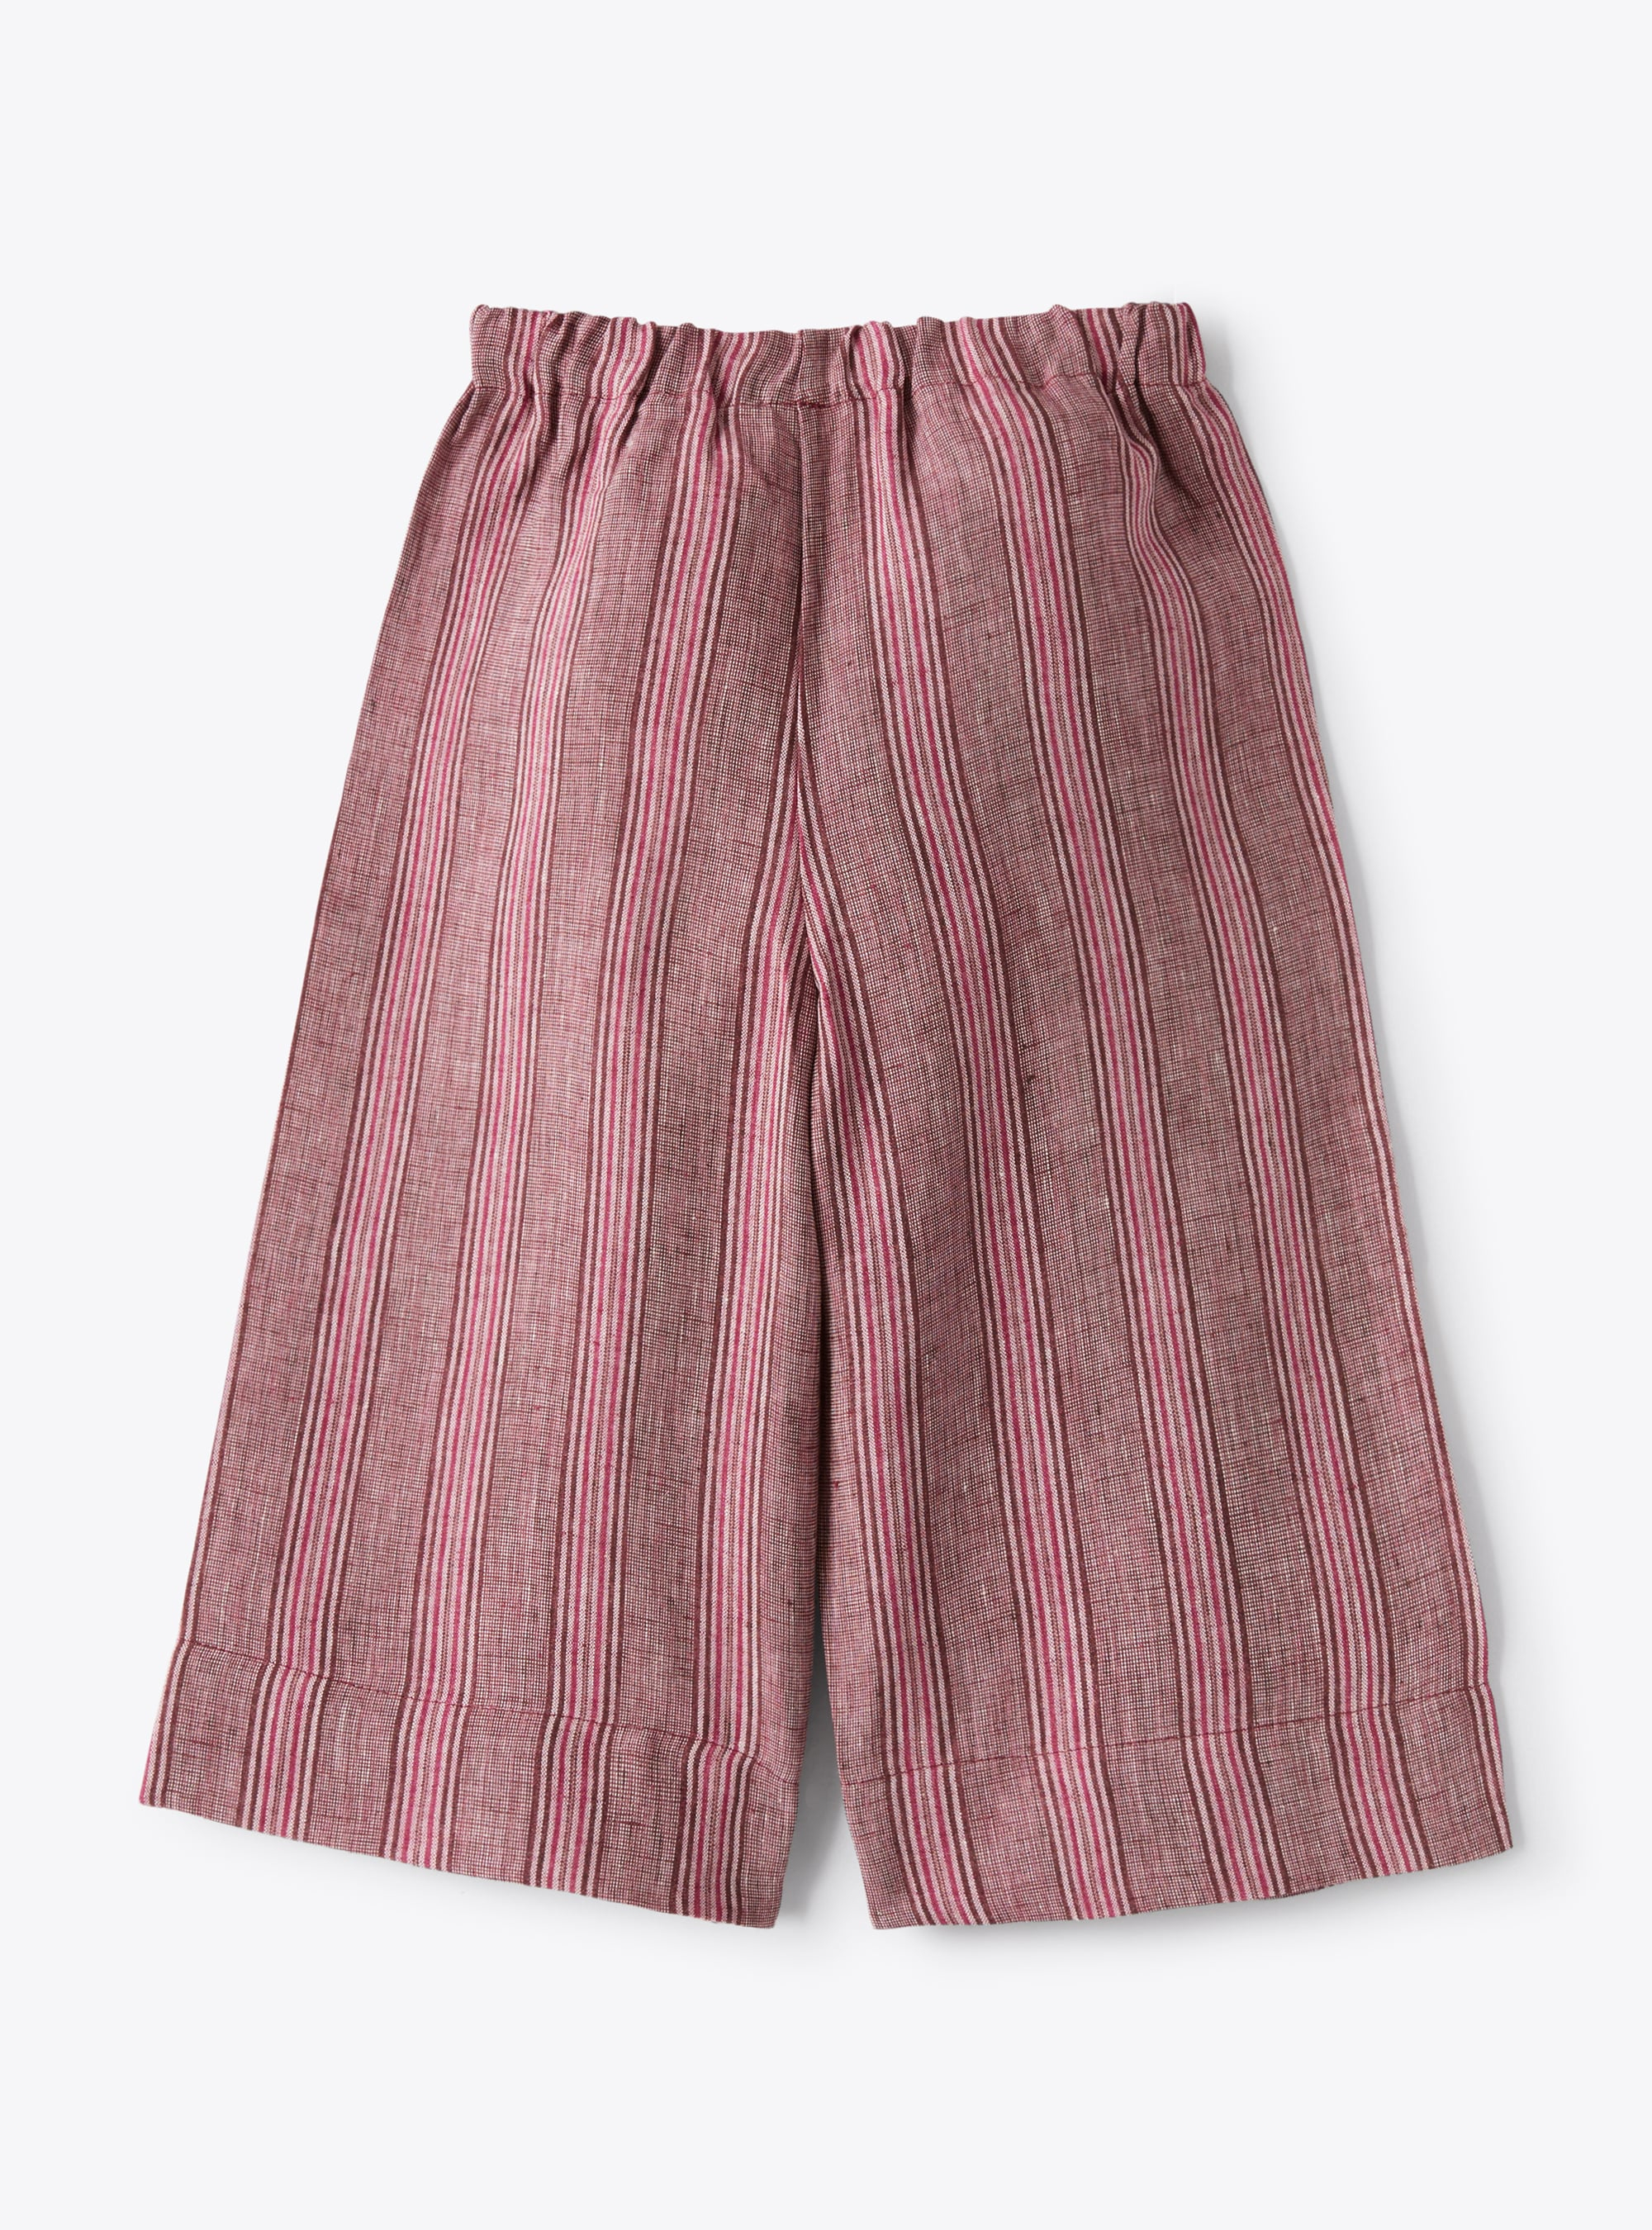 Pantalone capri in lino melange a righe color viola tropea | Il Gufo